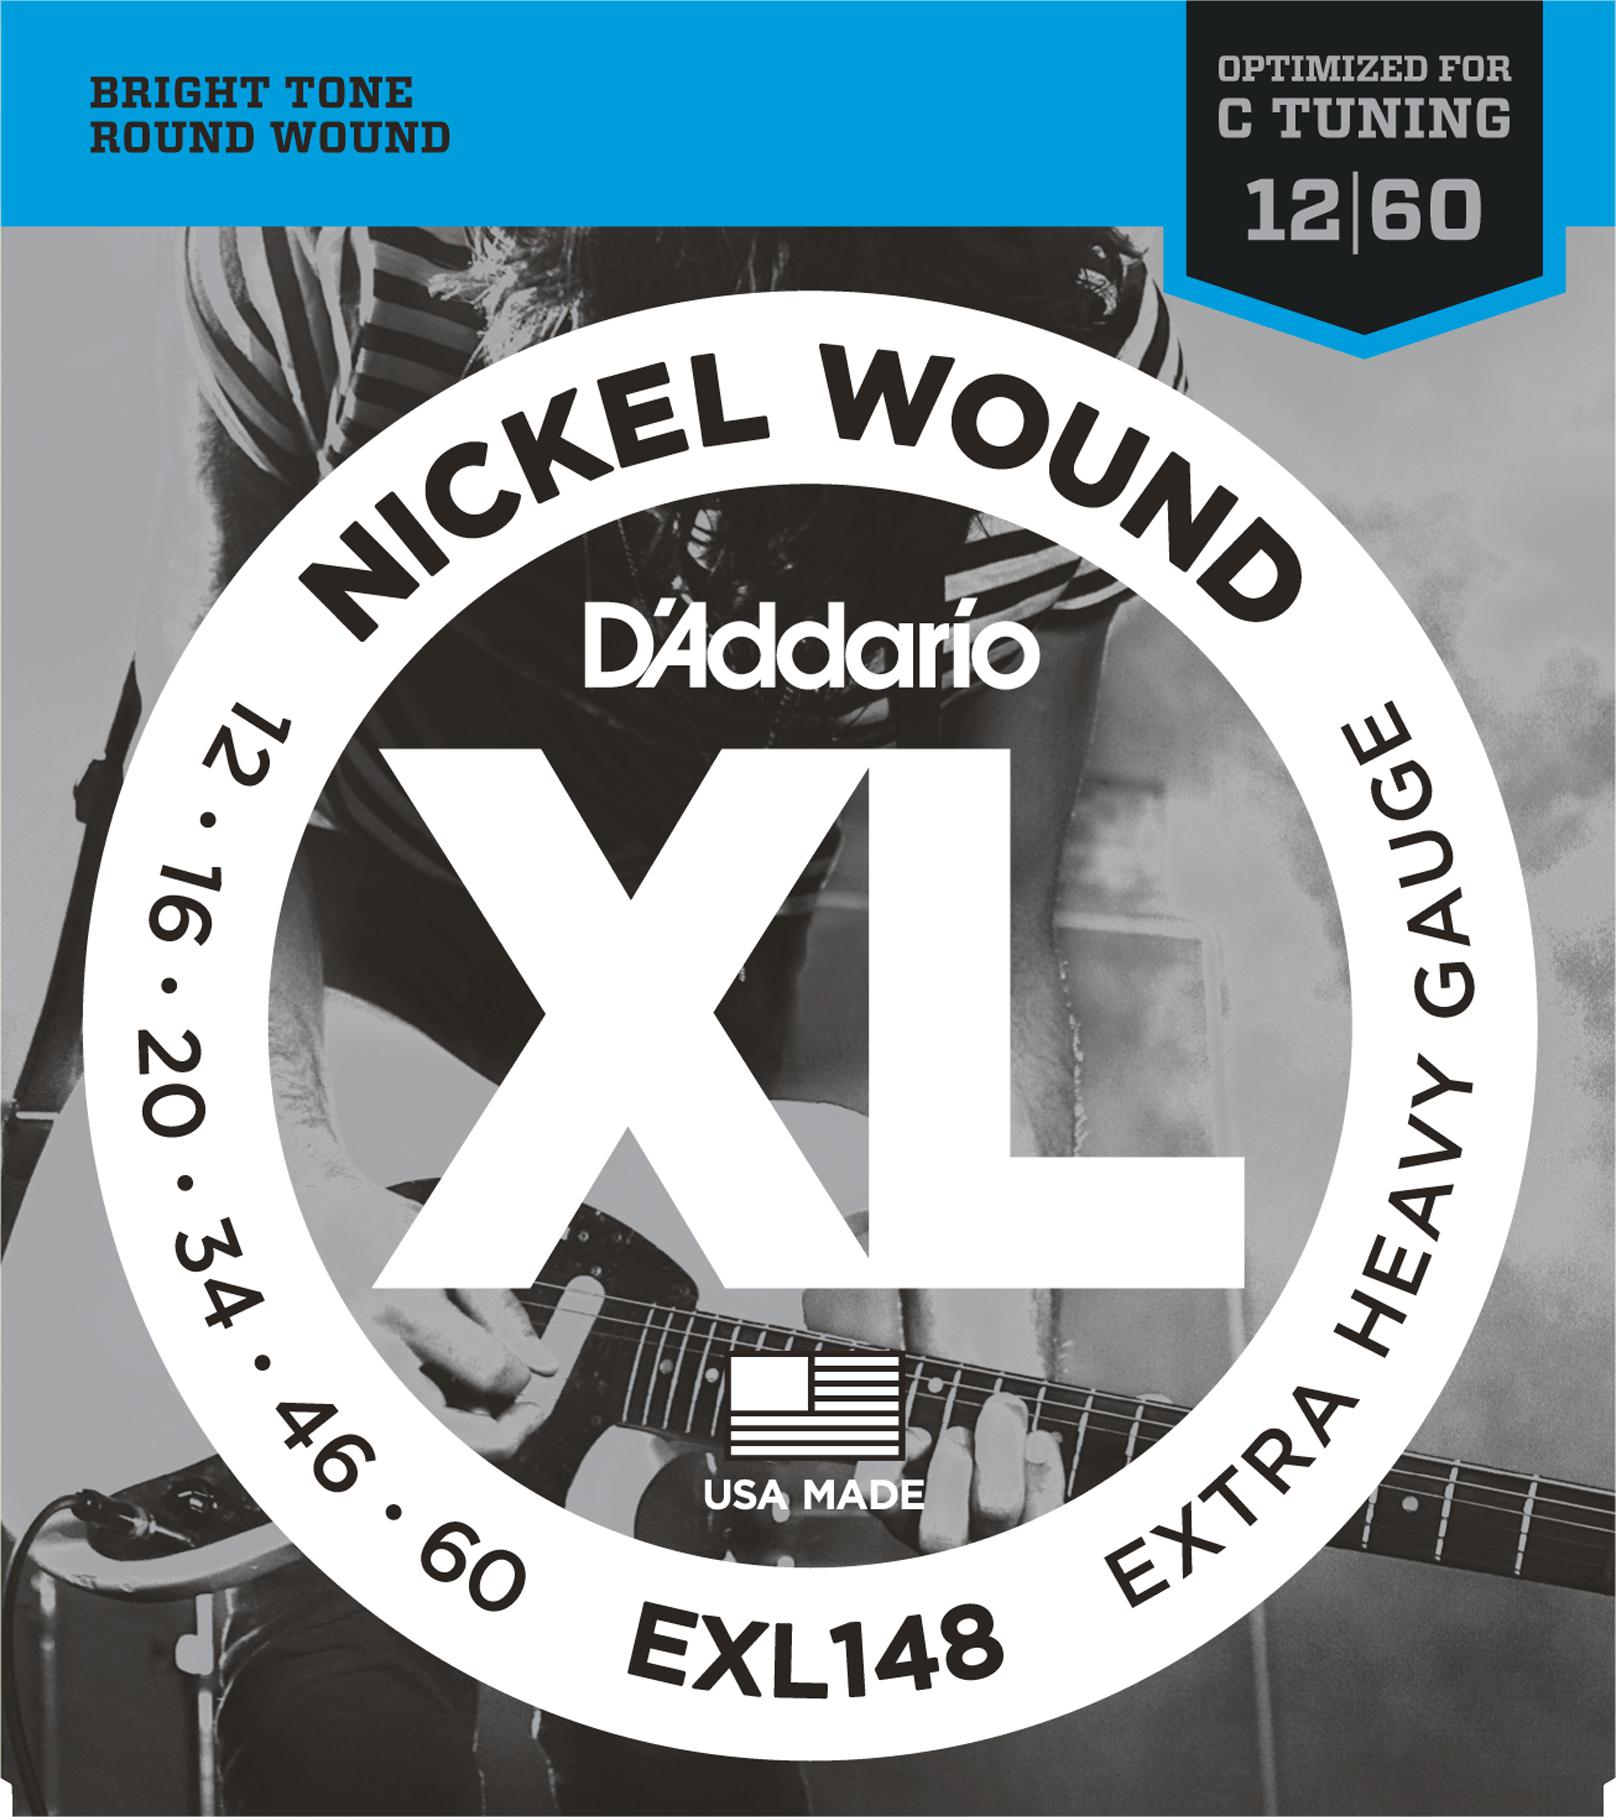 D'Addario EXL148 XL 12-60